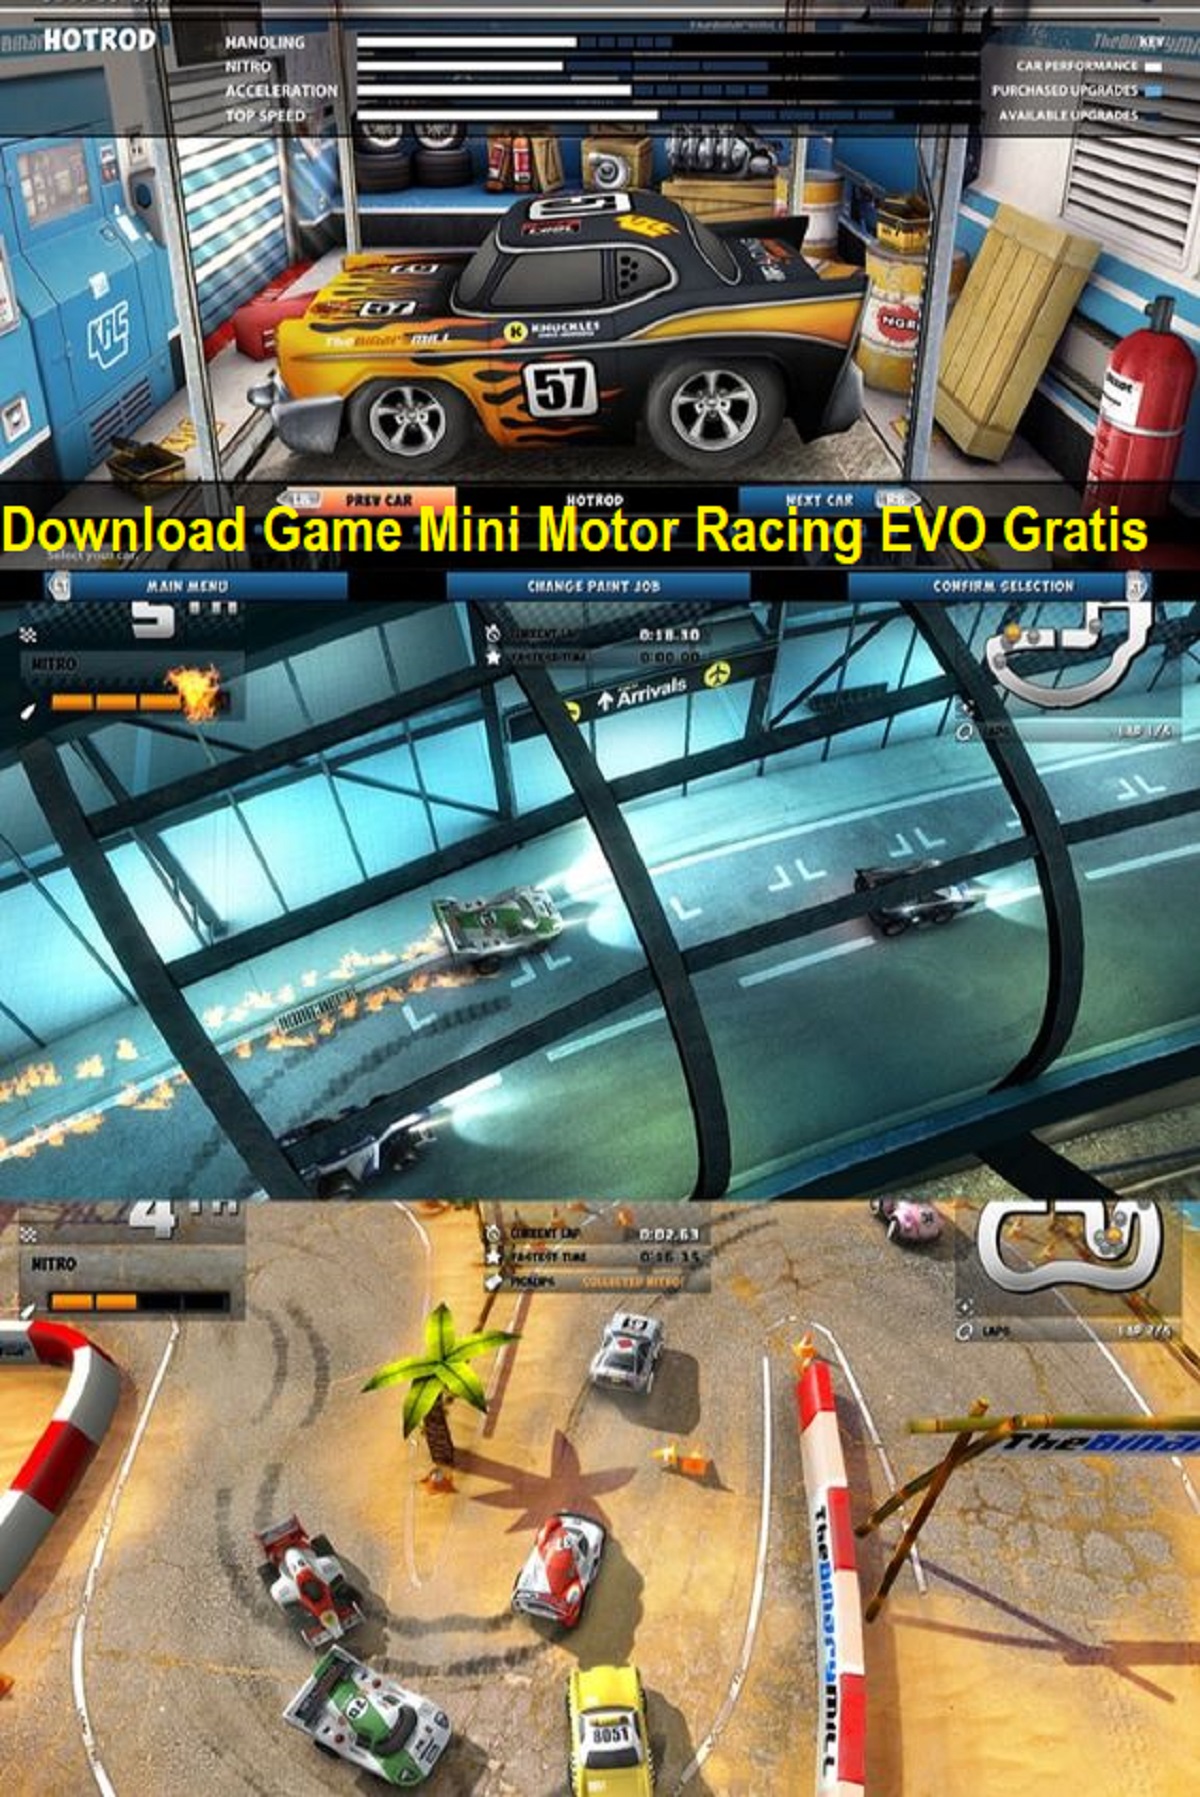 Download Game Mini Motor Racing EVO Gratis